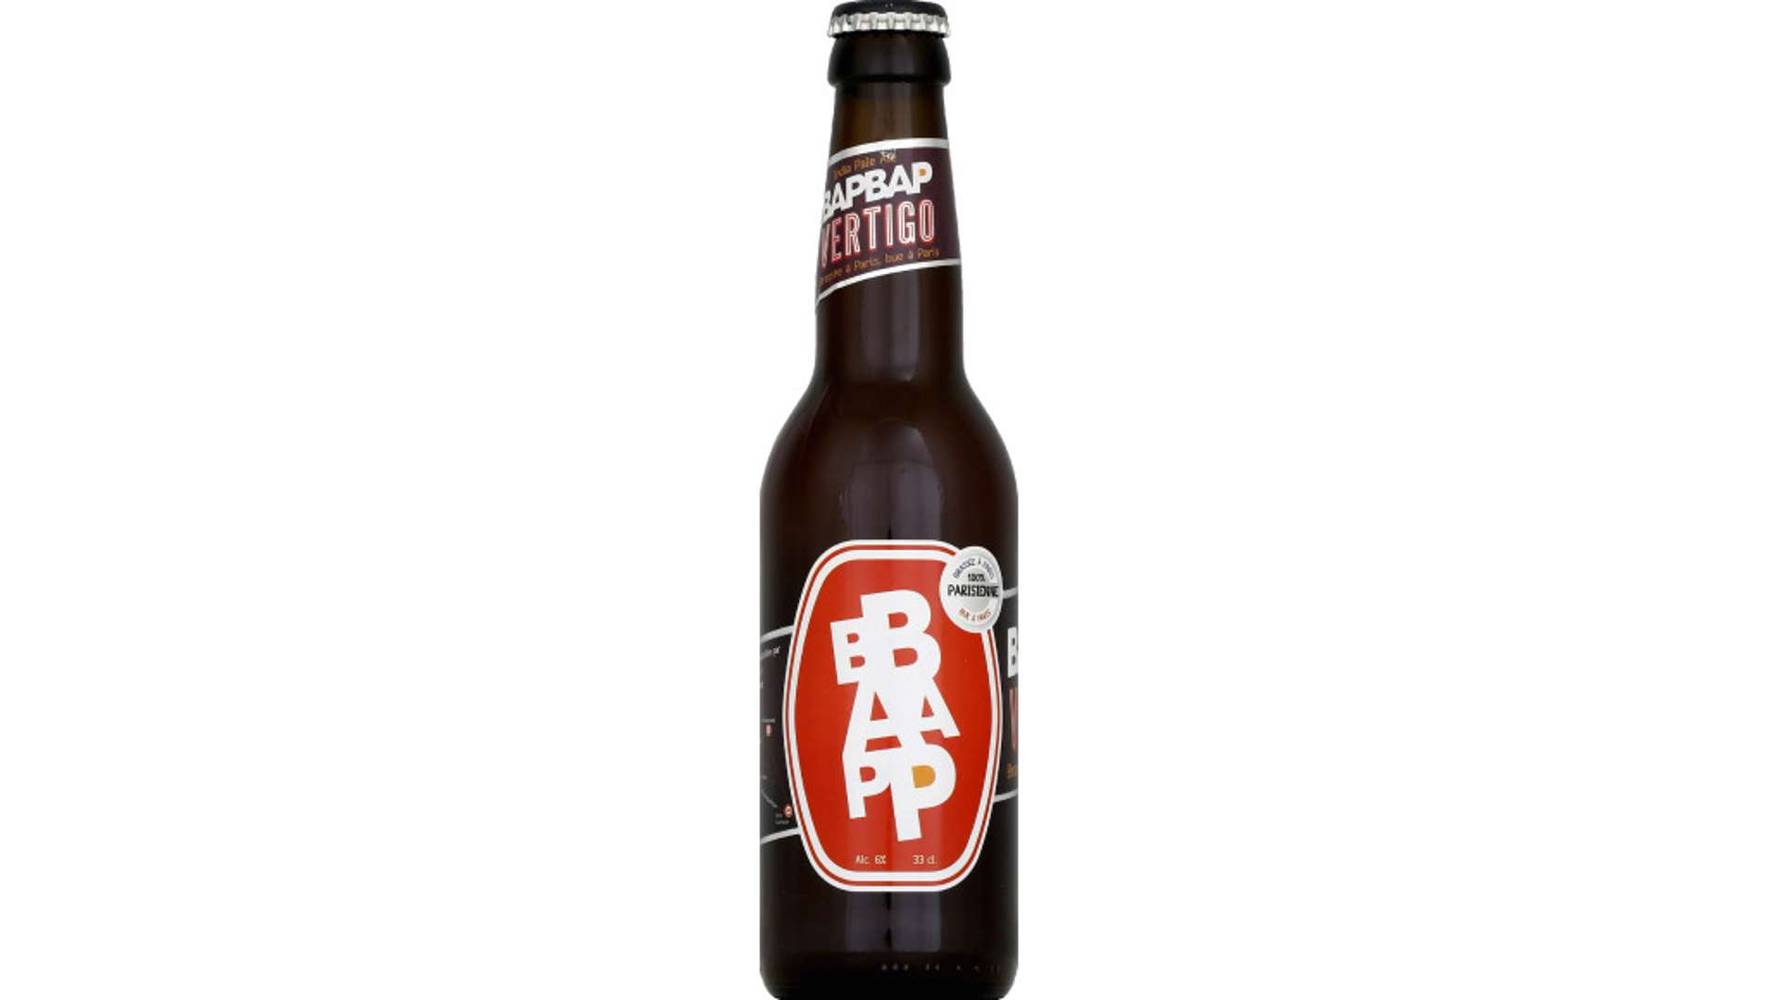 Bapbap - Bière vertigo ipa (33cl)